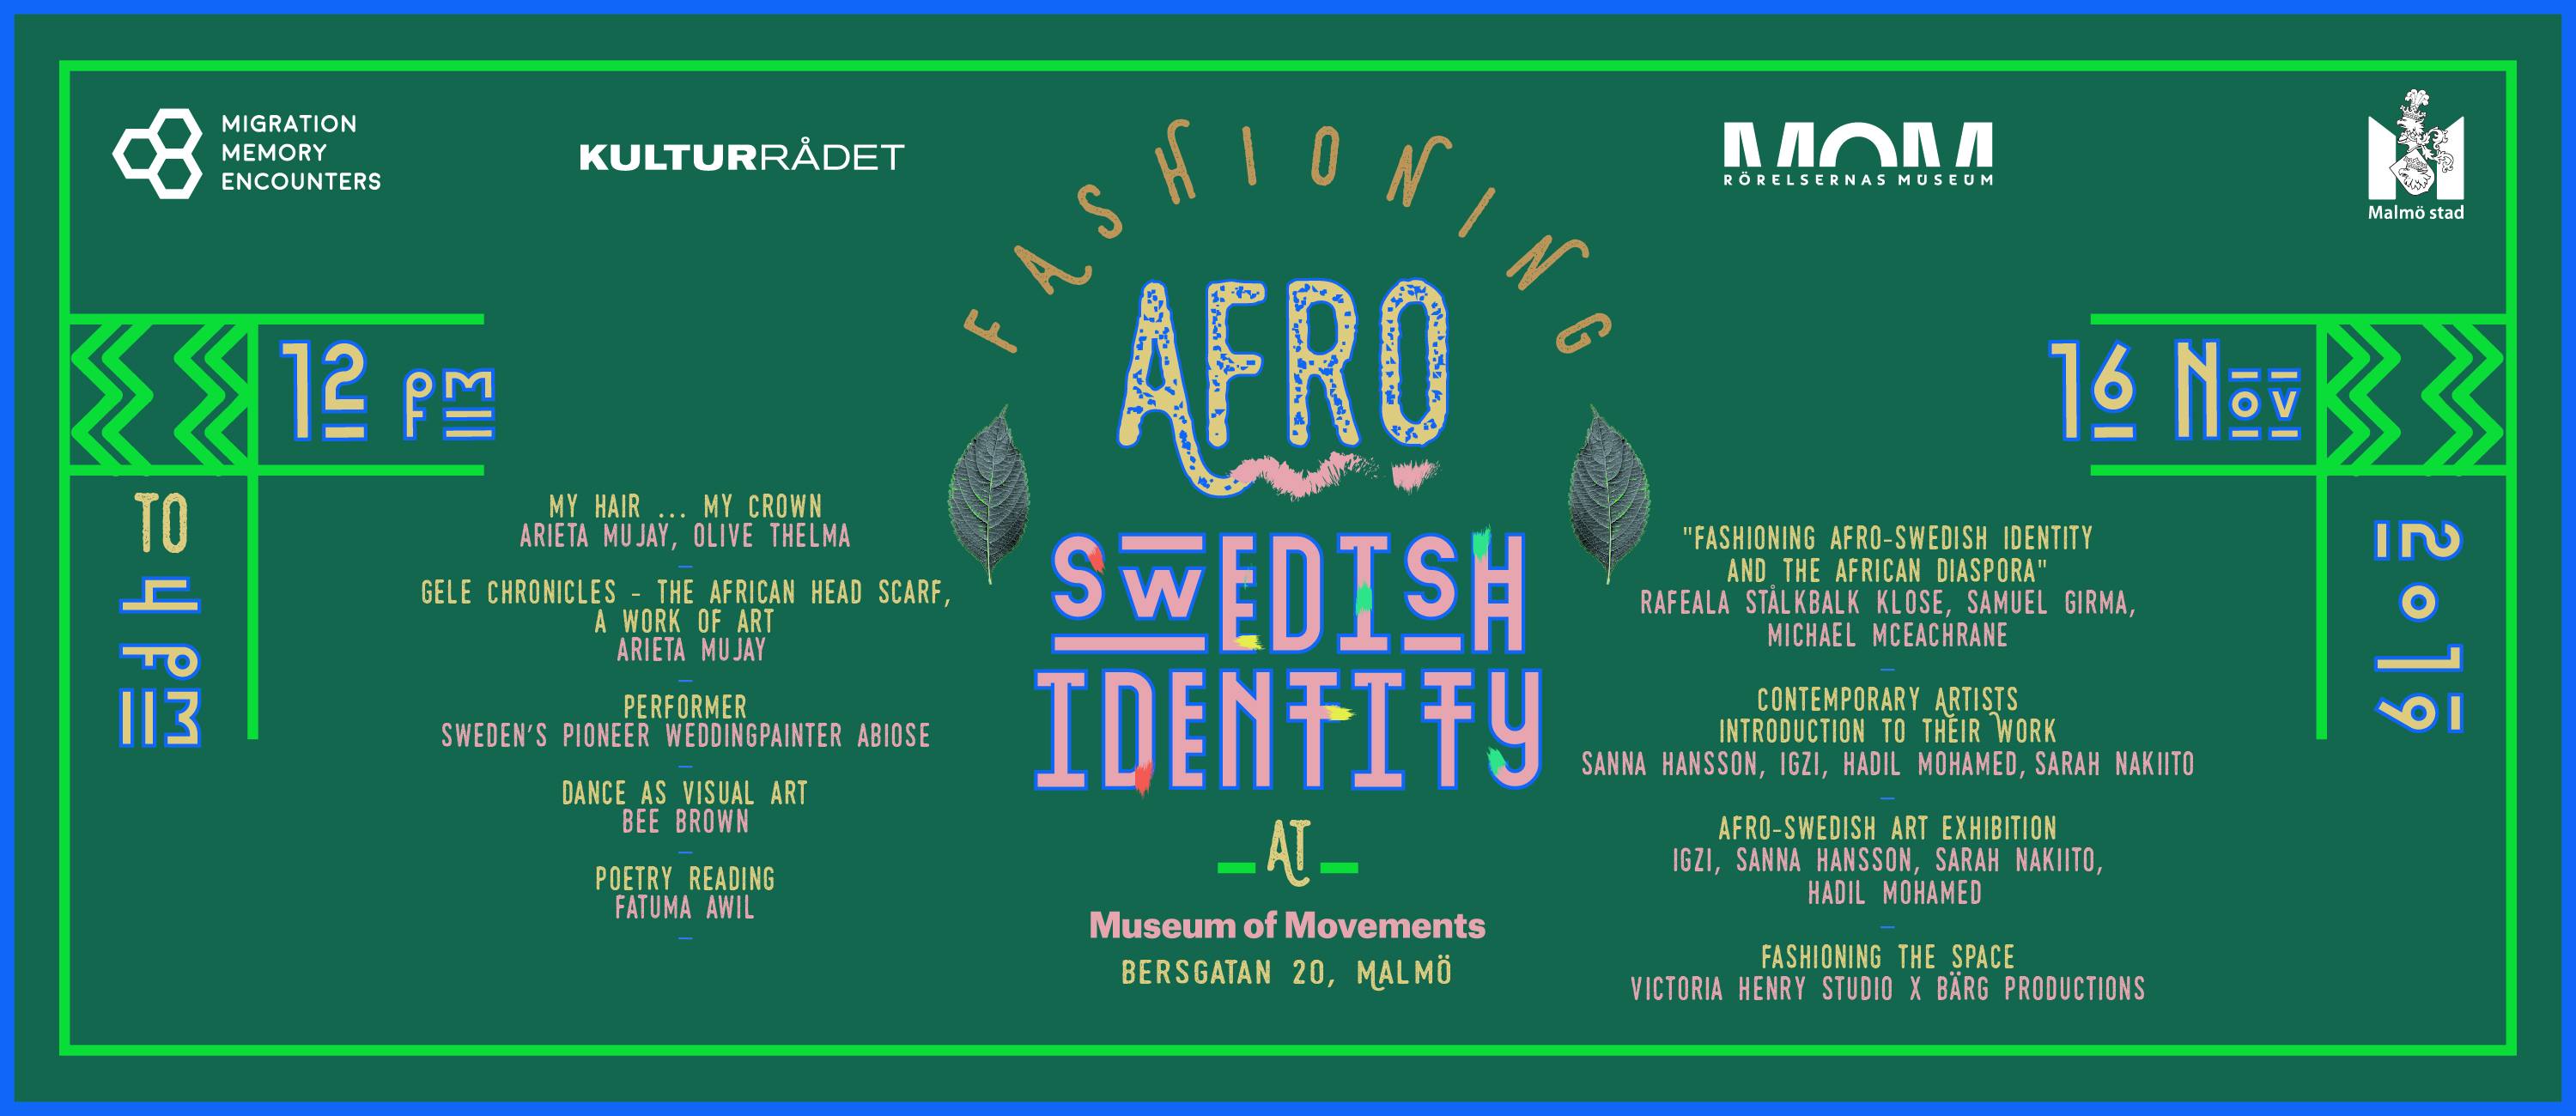 EVENEMANG: MME 3:2 "Fashioning Afro-Swedish Identity"